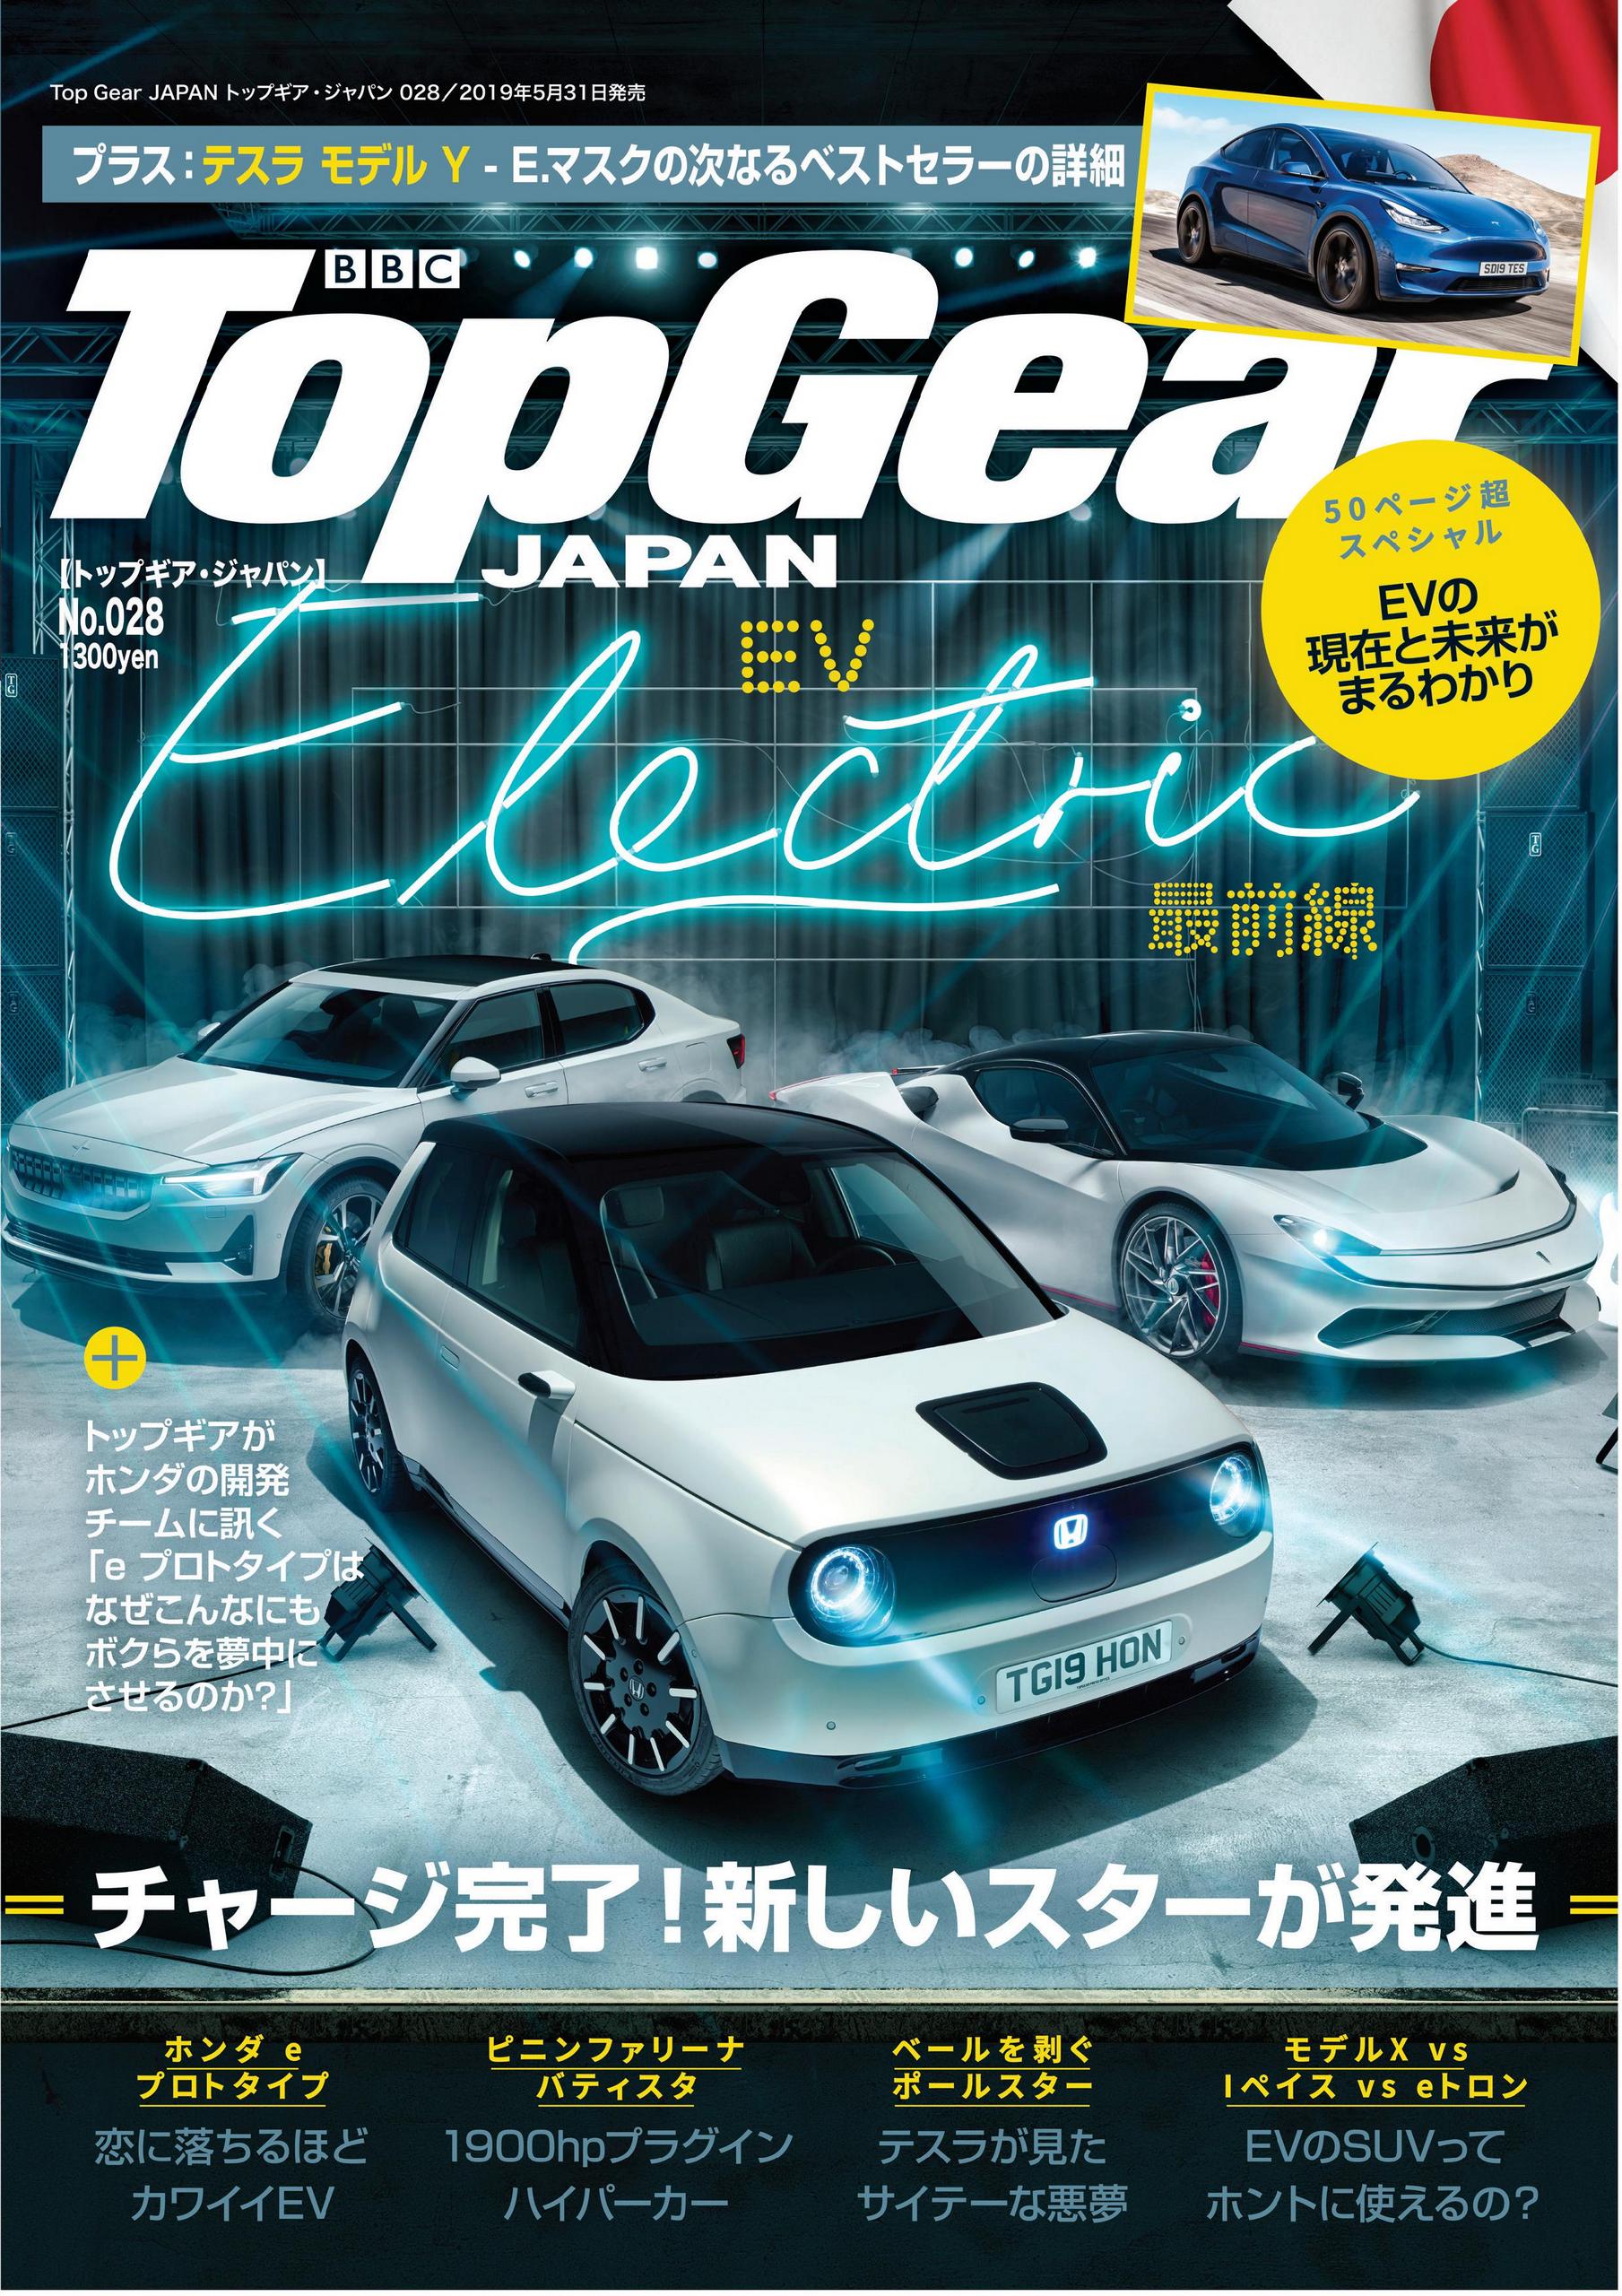 ホンダ E プロトタイプなどev最前線 トップギア ジャパン028号 トップギア ジャパン Top Gear Japan